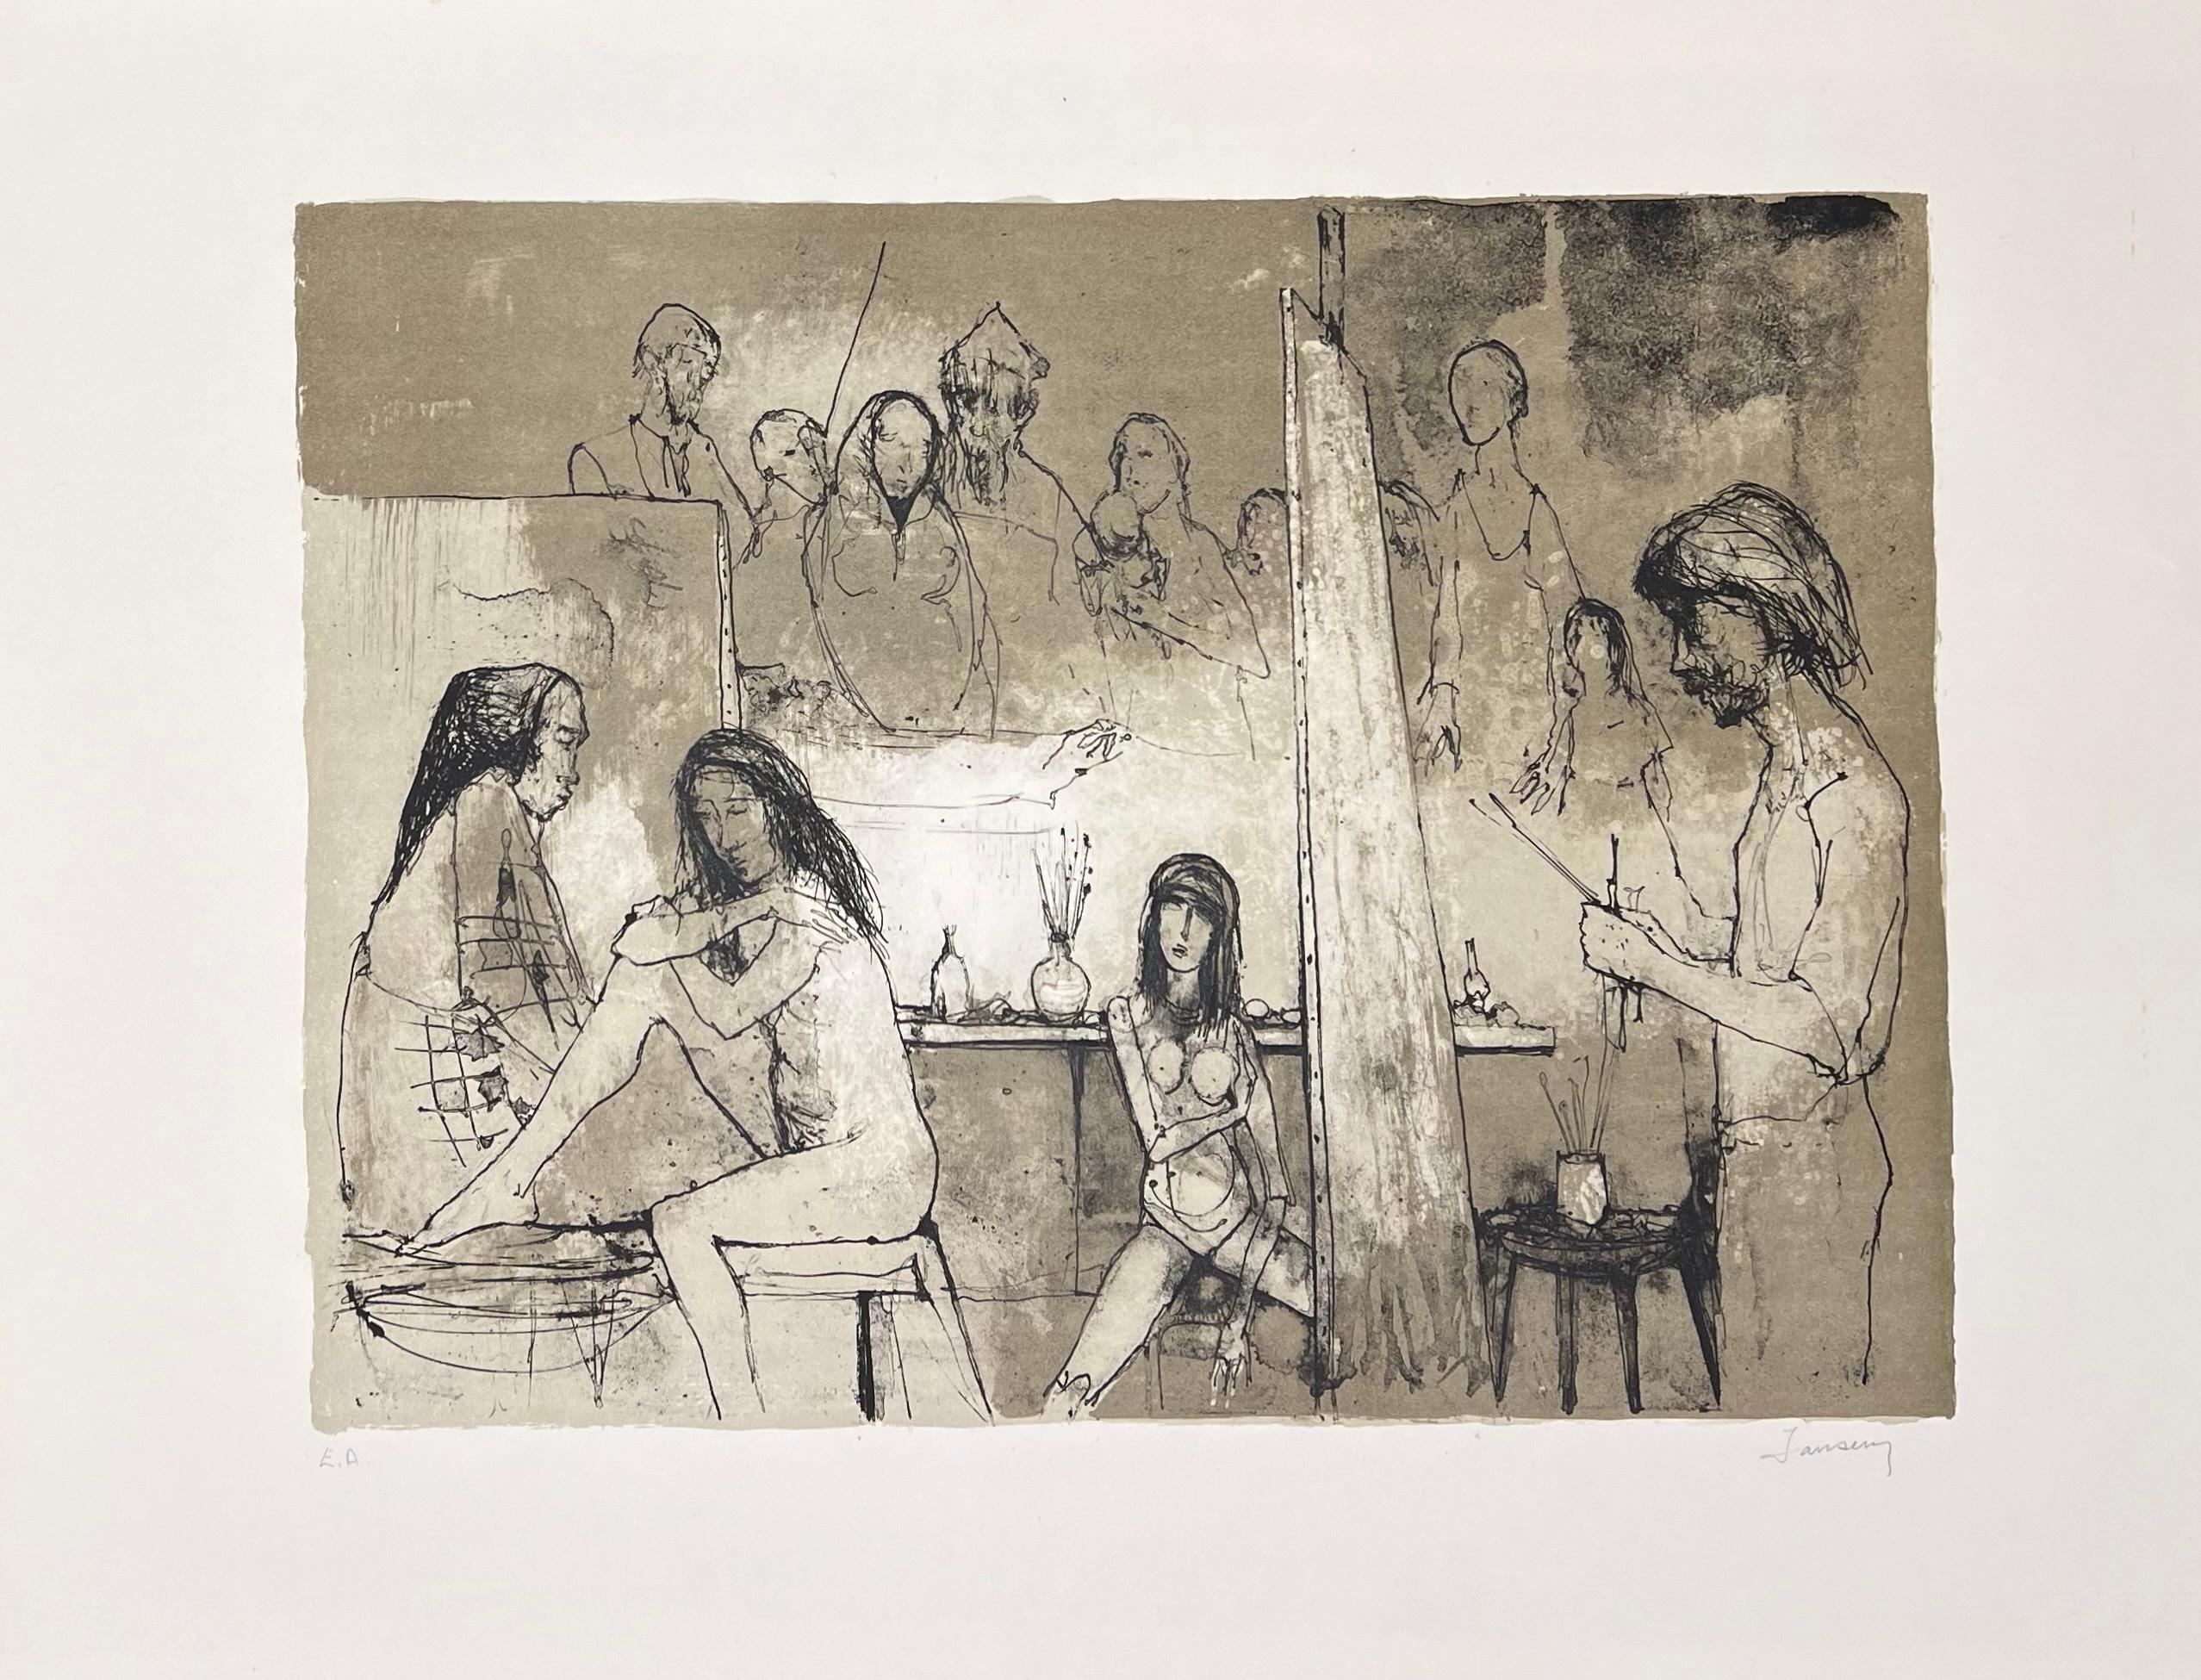 Jean Jansem (1920-2013) 
Peintre dans son atelier, 1969
Lithographie sur papier Rives
Signée en bas à droite et justifiée en bas à gauche 
39 x 52 cm / 56 x 76 cm

D'une édition à 120 exemplaires 

Bibliographie :
Jansem Lithographe, 1954-1983, de